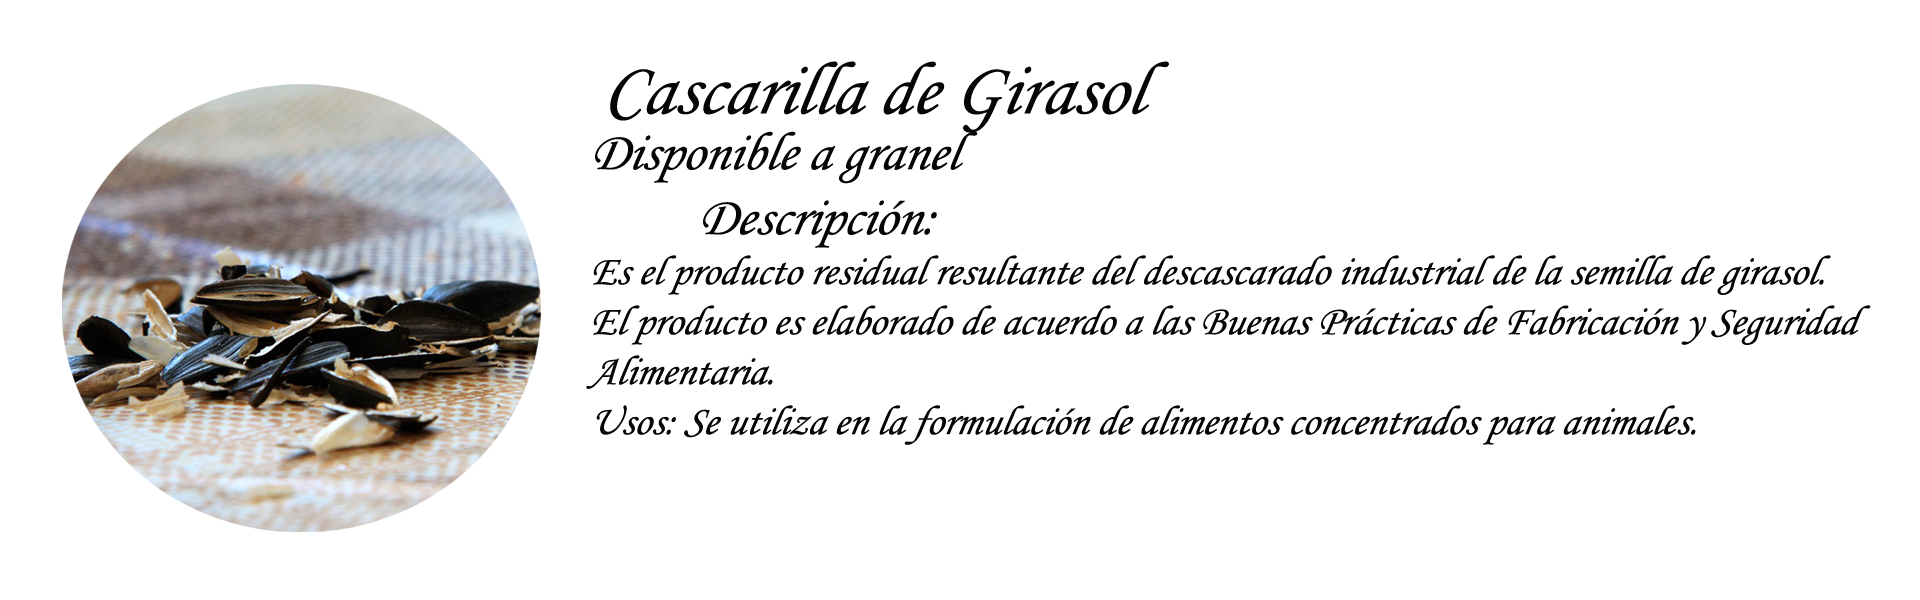 Cascarilla de Girasol